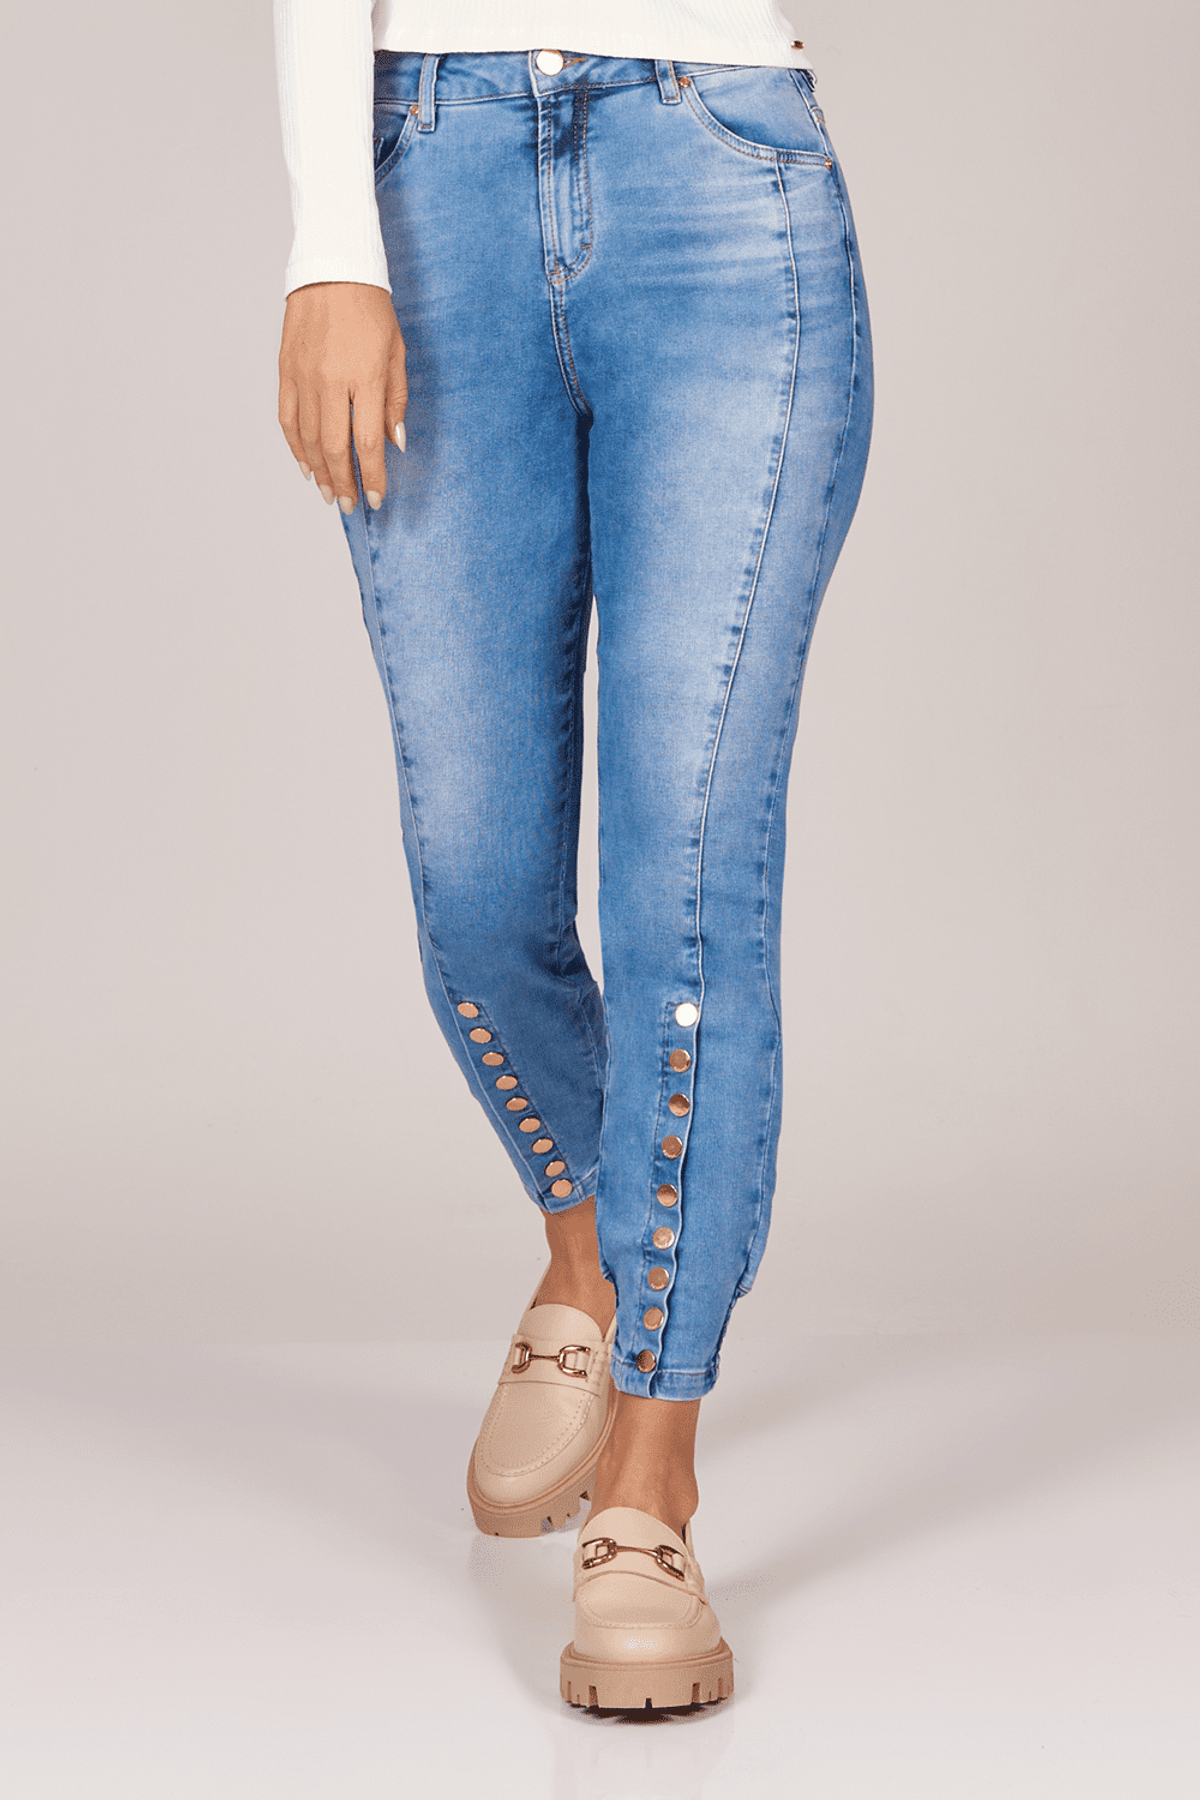 Calça Patogê feminina jeans jogger com tachas na barra cintura